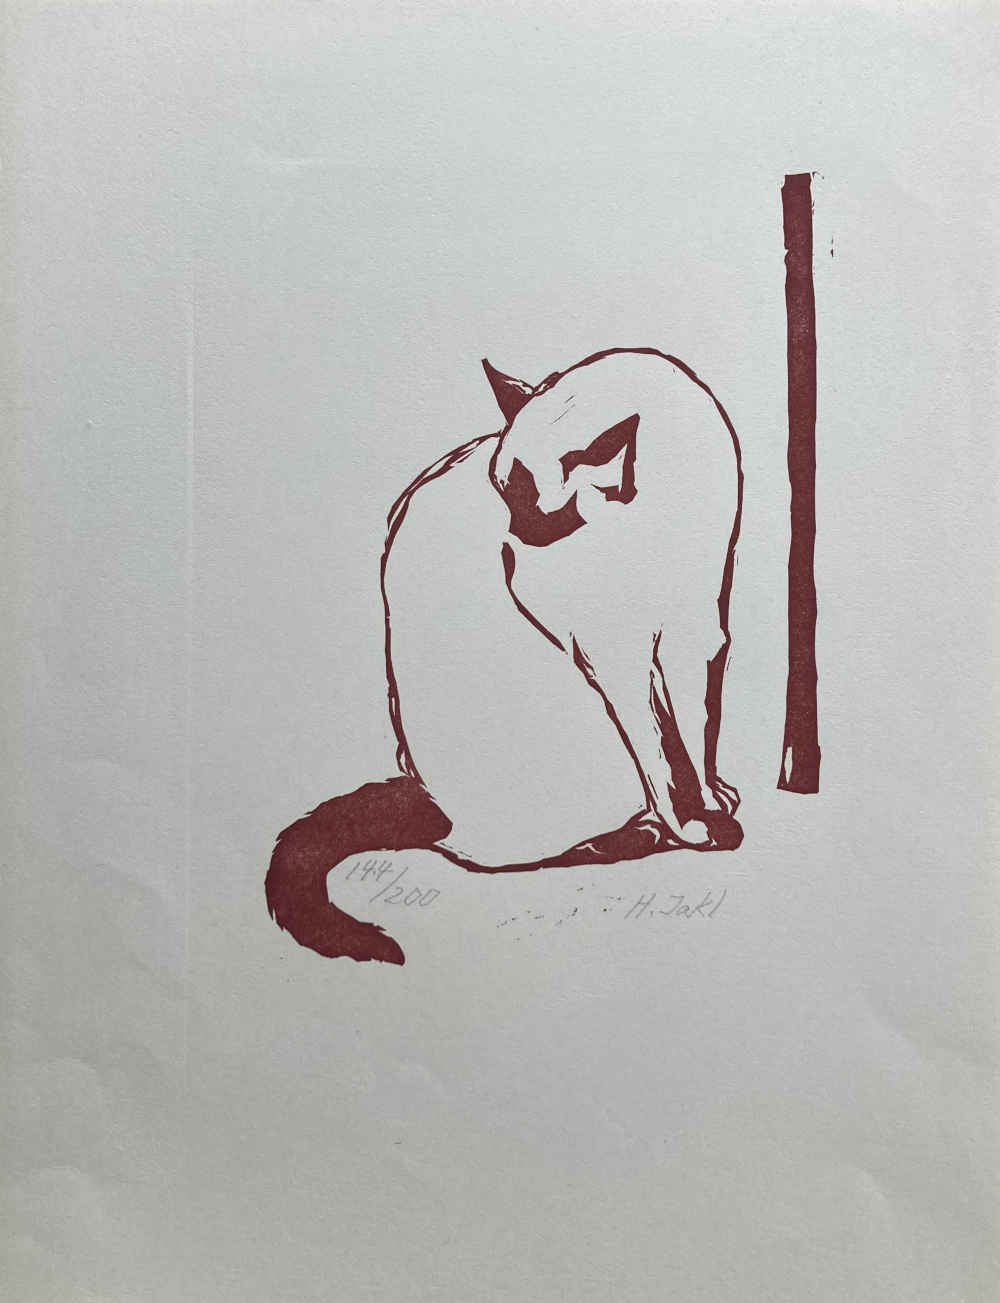 Linocut with cat by Hermann Jakl.